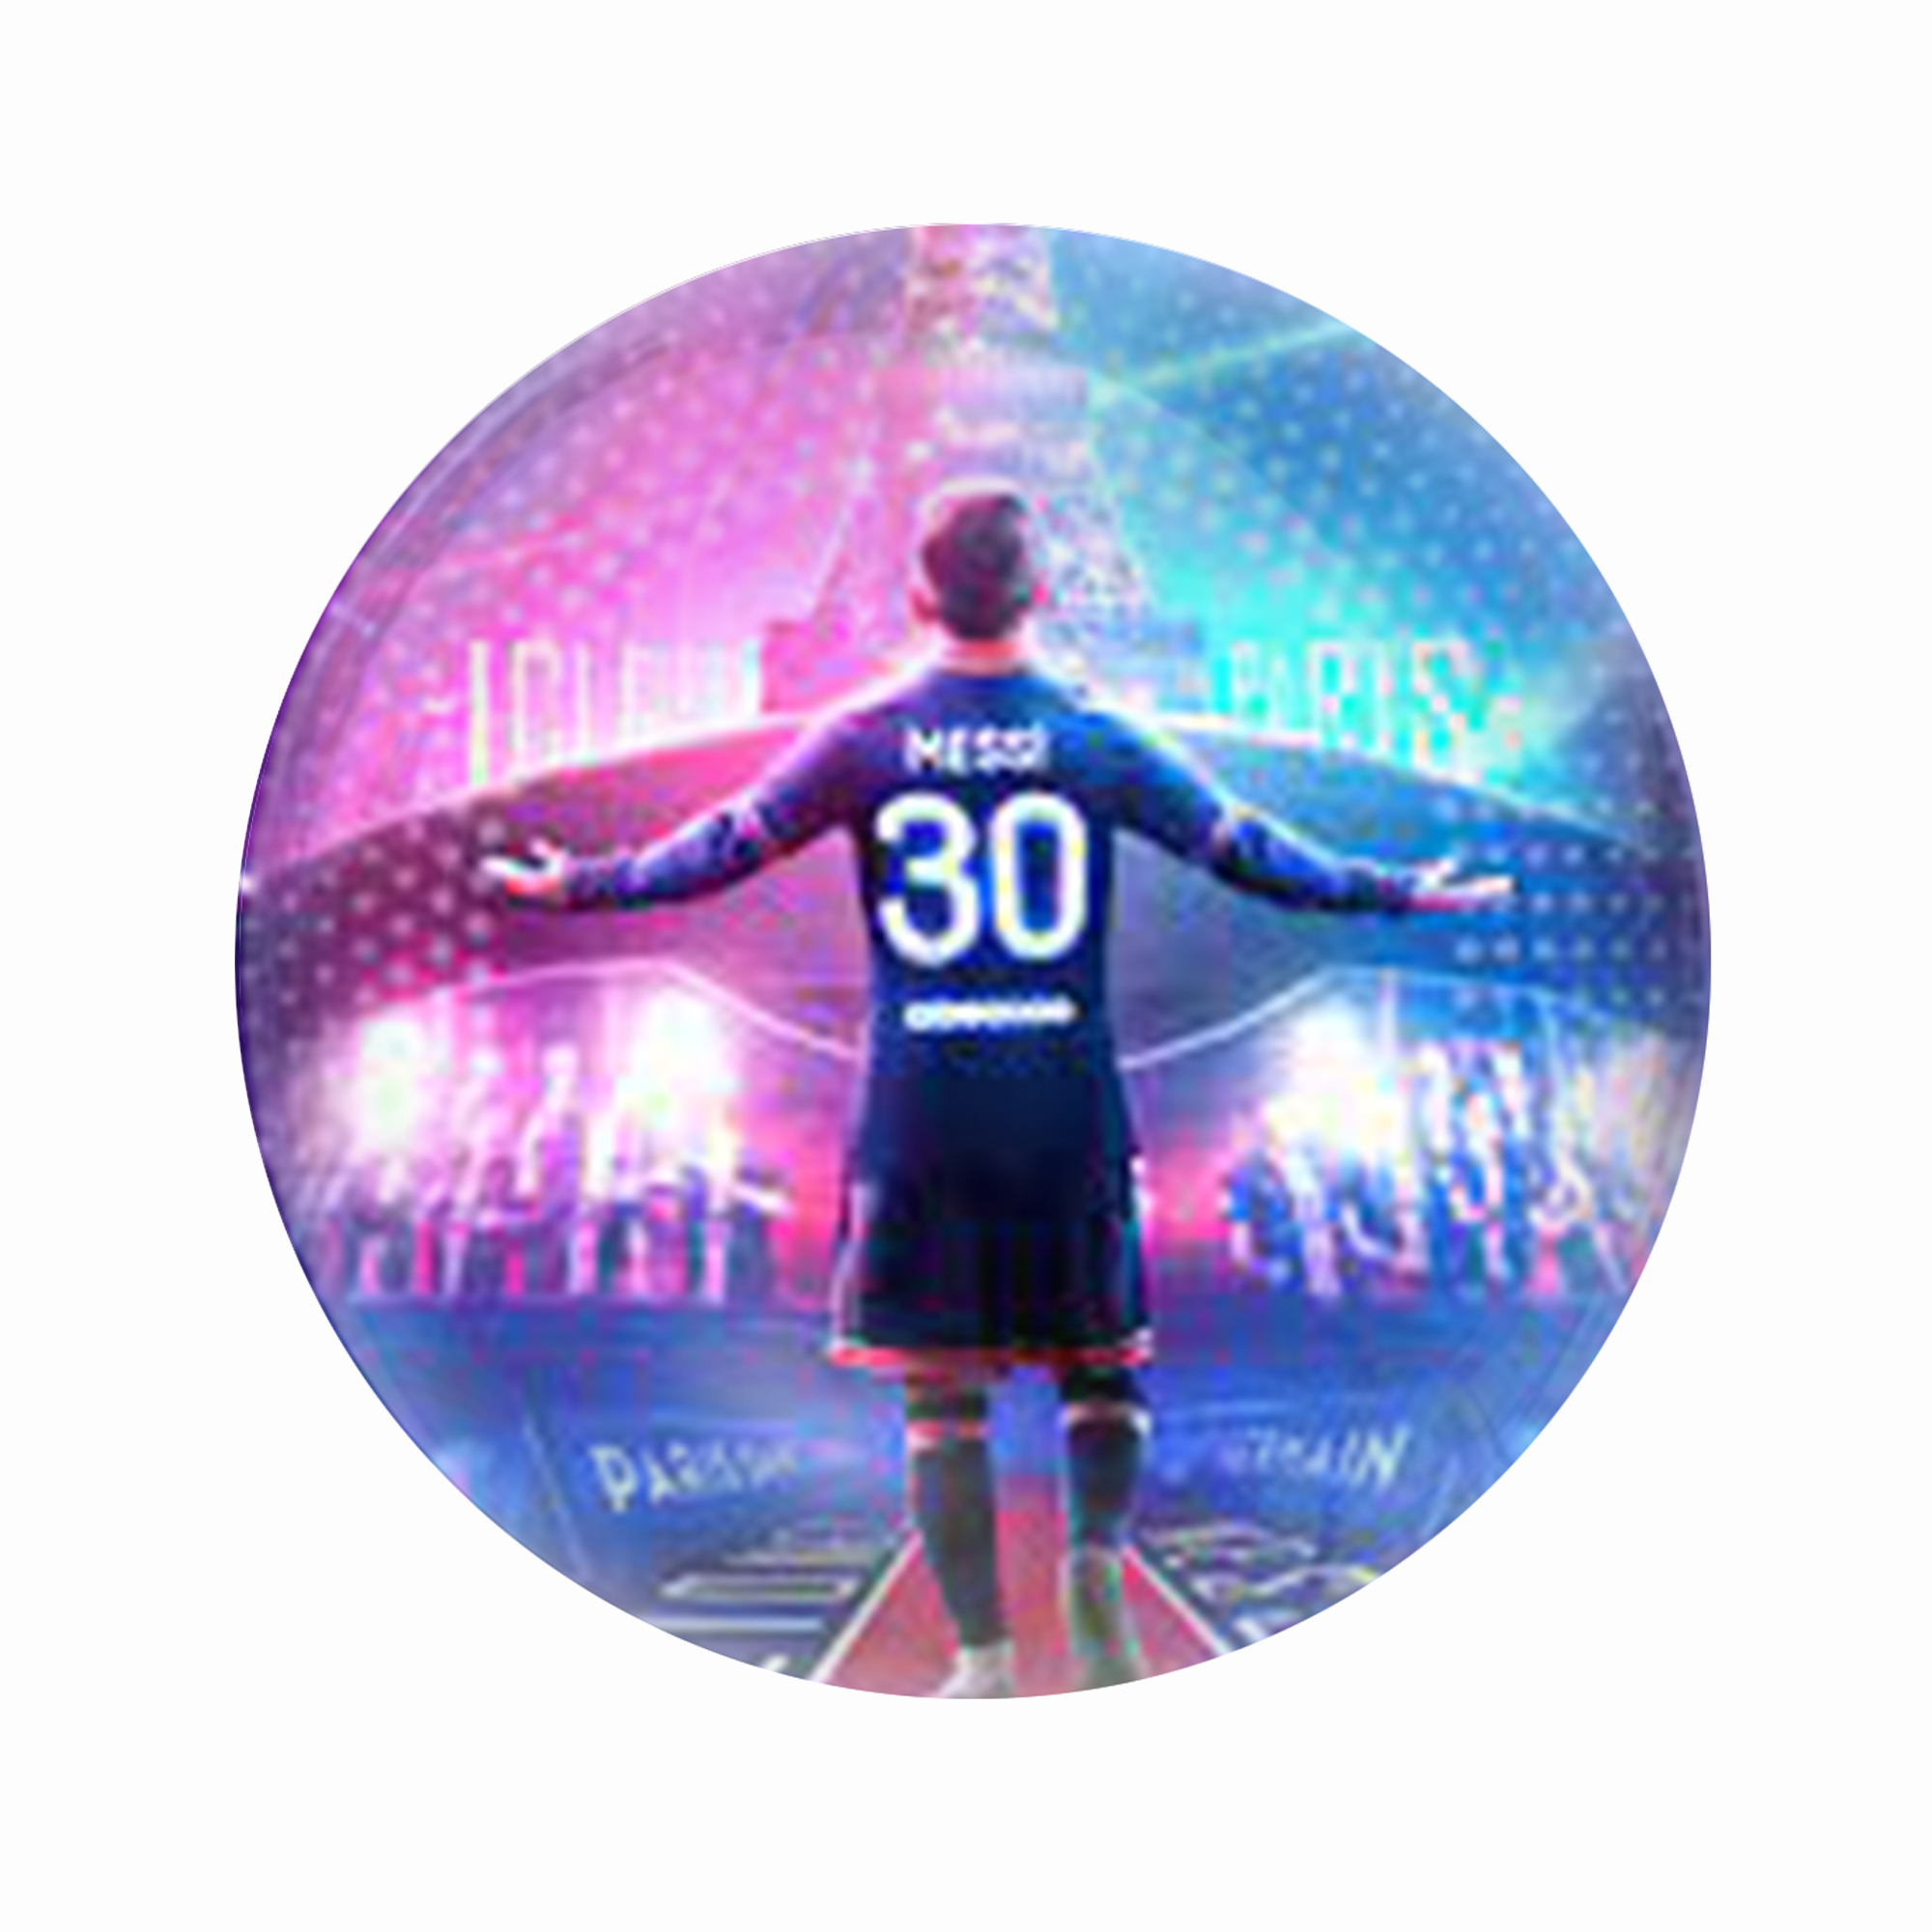 مگنت عرش طرح ورزشی لیونل مسی Messi کد Asm4632